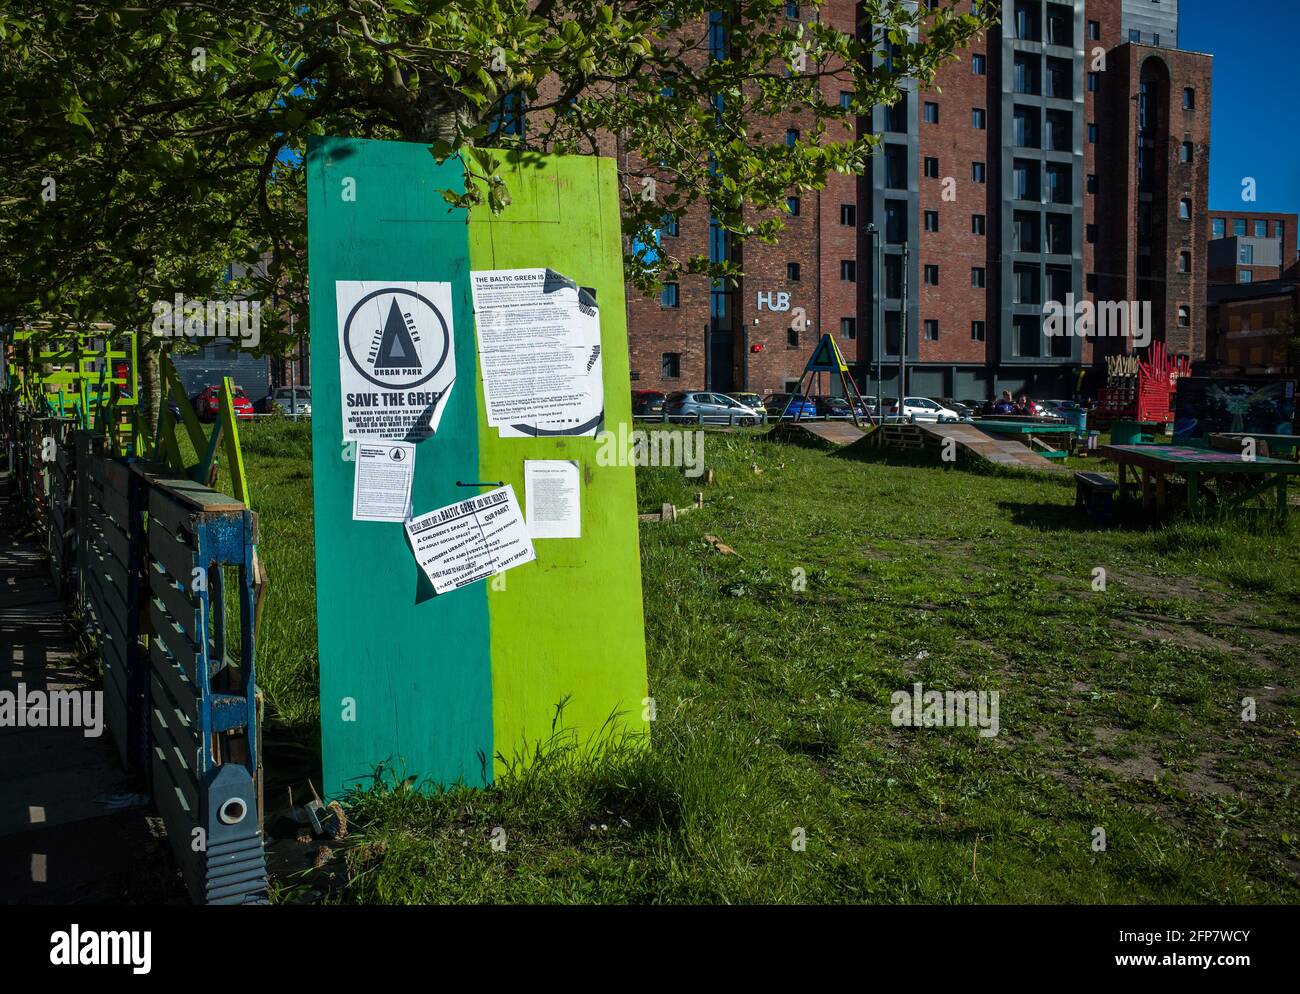 Liverpool, 19. Mai 2021. Unterschreiben Sie und fragen Sie nach Ideen, welche Art von Nutzung die Menschen für das Baltic Green, einen öffentlichen Raum unter drei in Liverpool, der Ba, wünschen Stockfoto